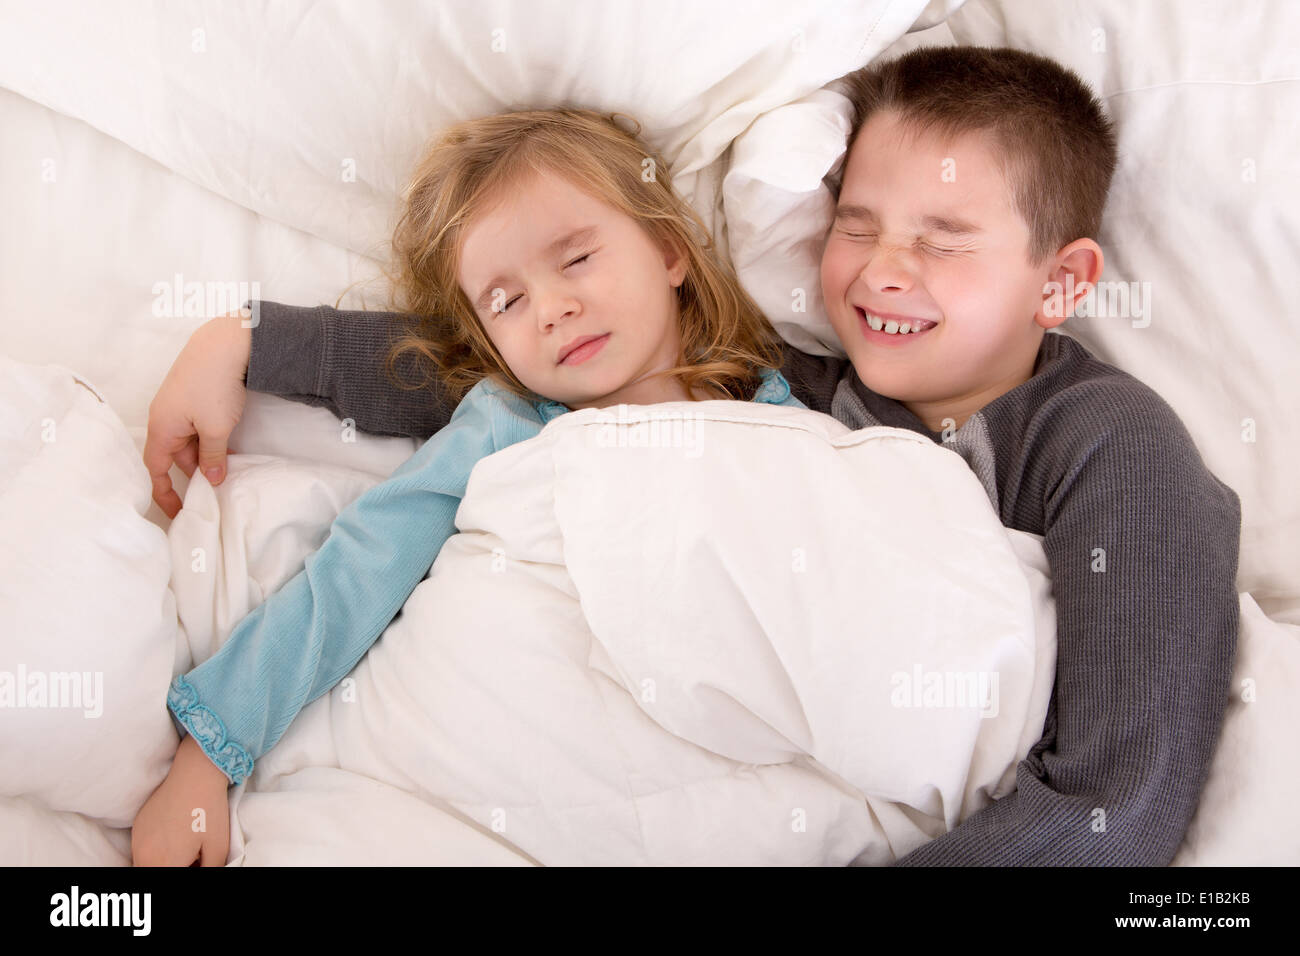 Навестить сестру. Мальчик с девочкой в постели. Кровать для мальчика и девочки в одной.